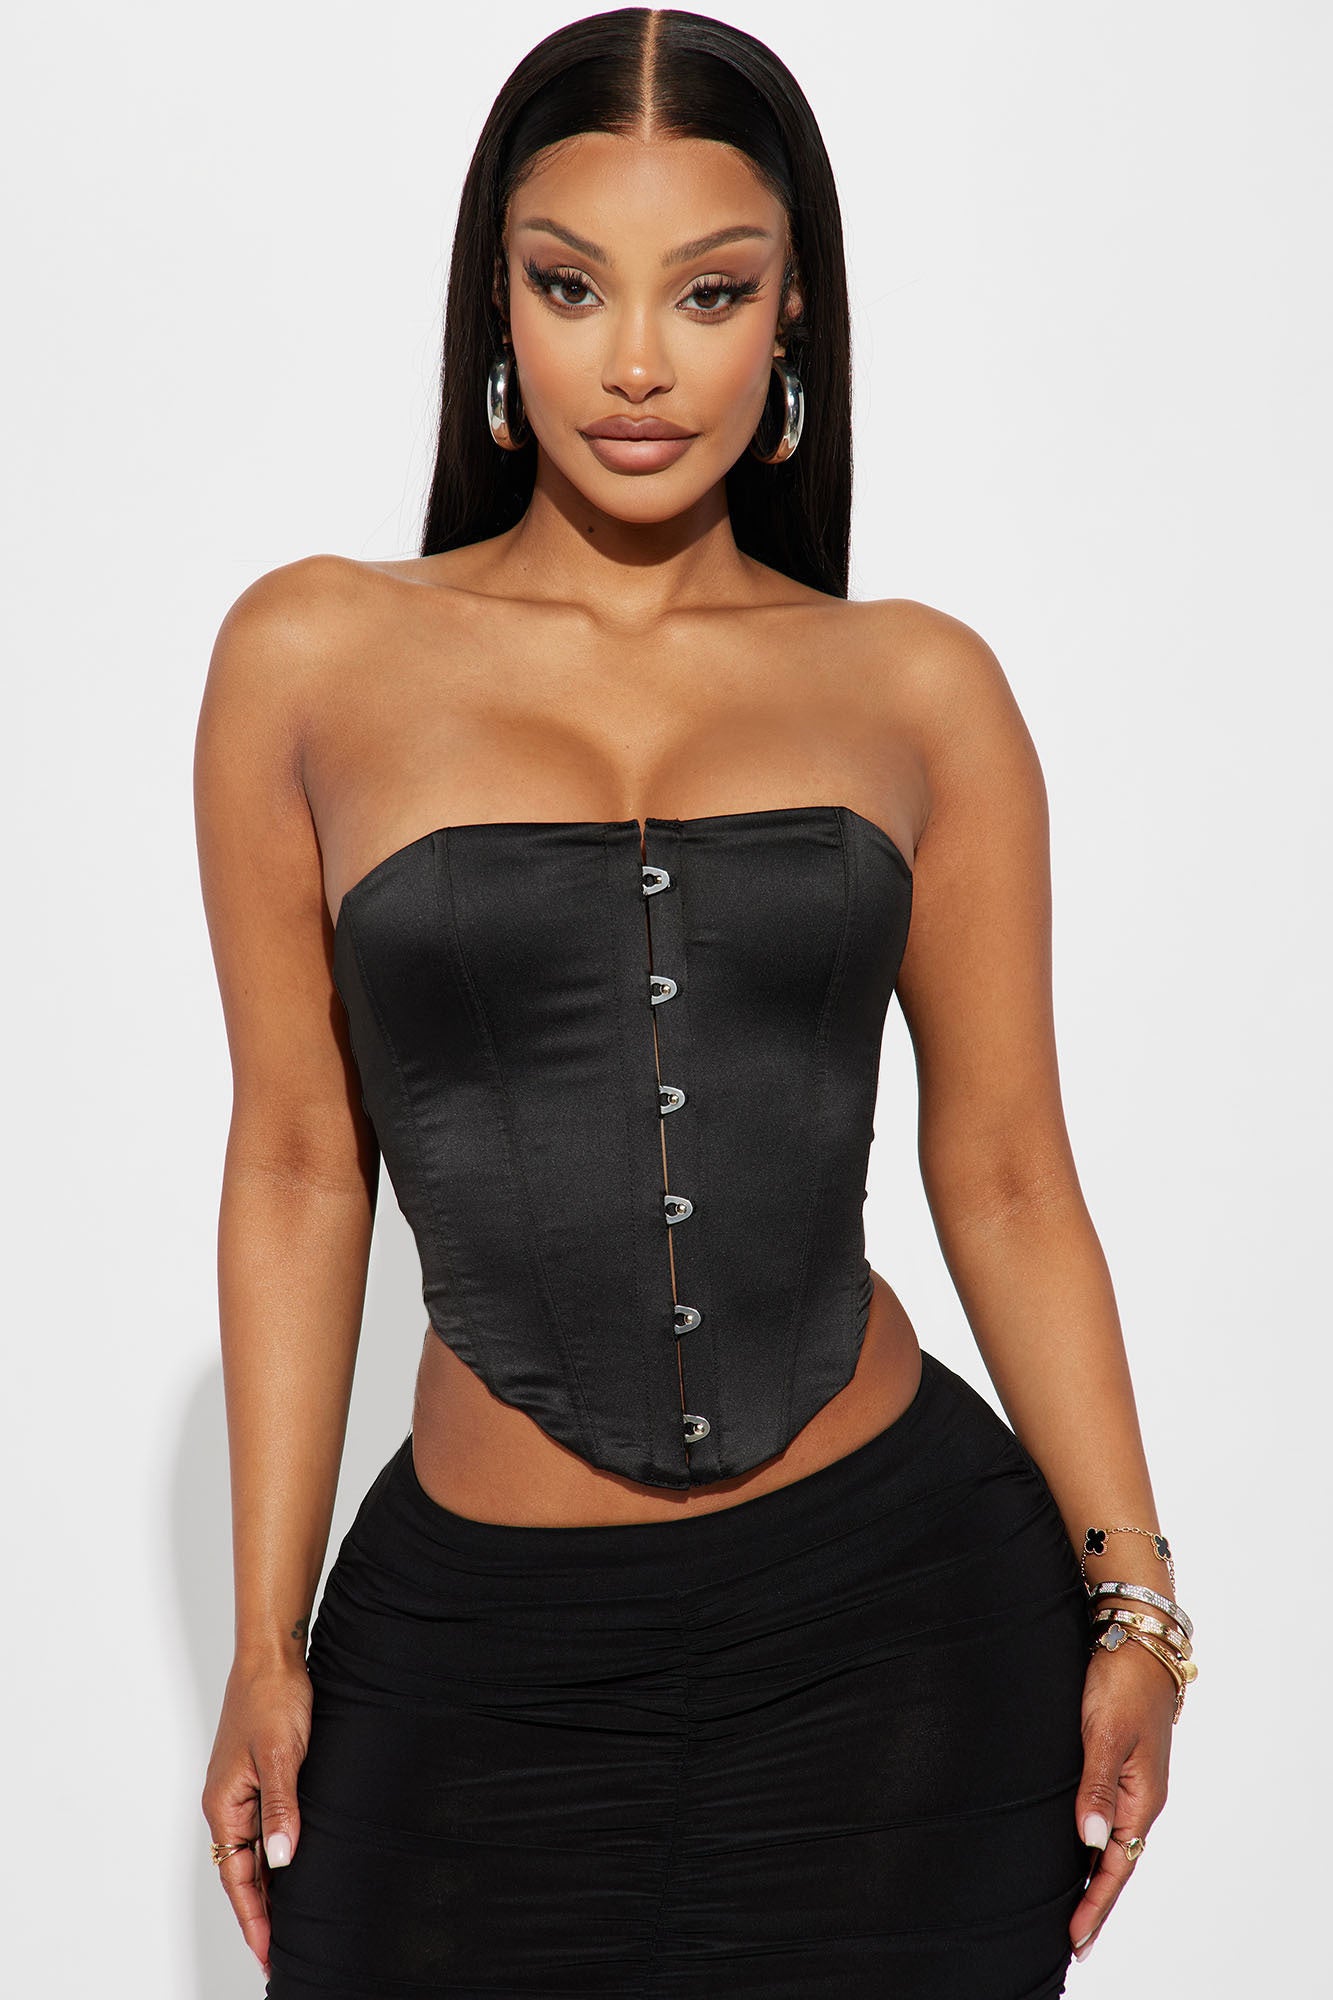 Black satin top corset - STATNAIA